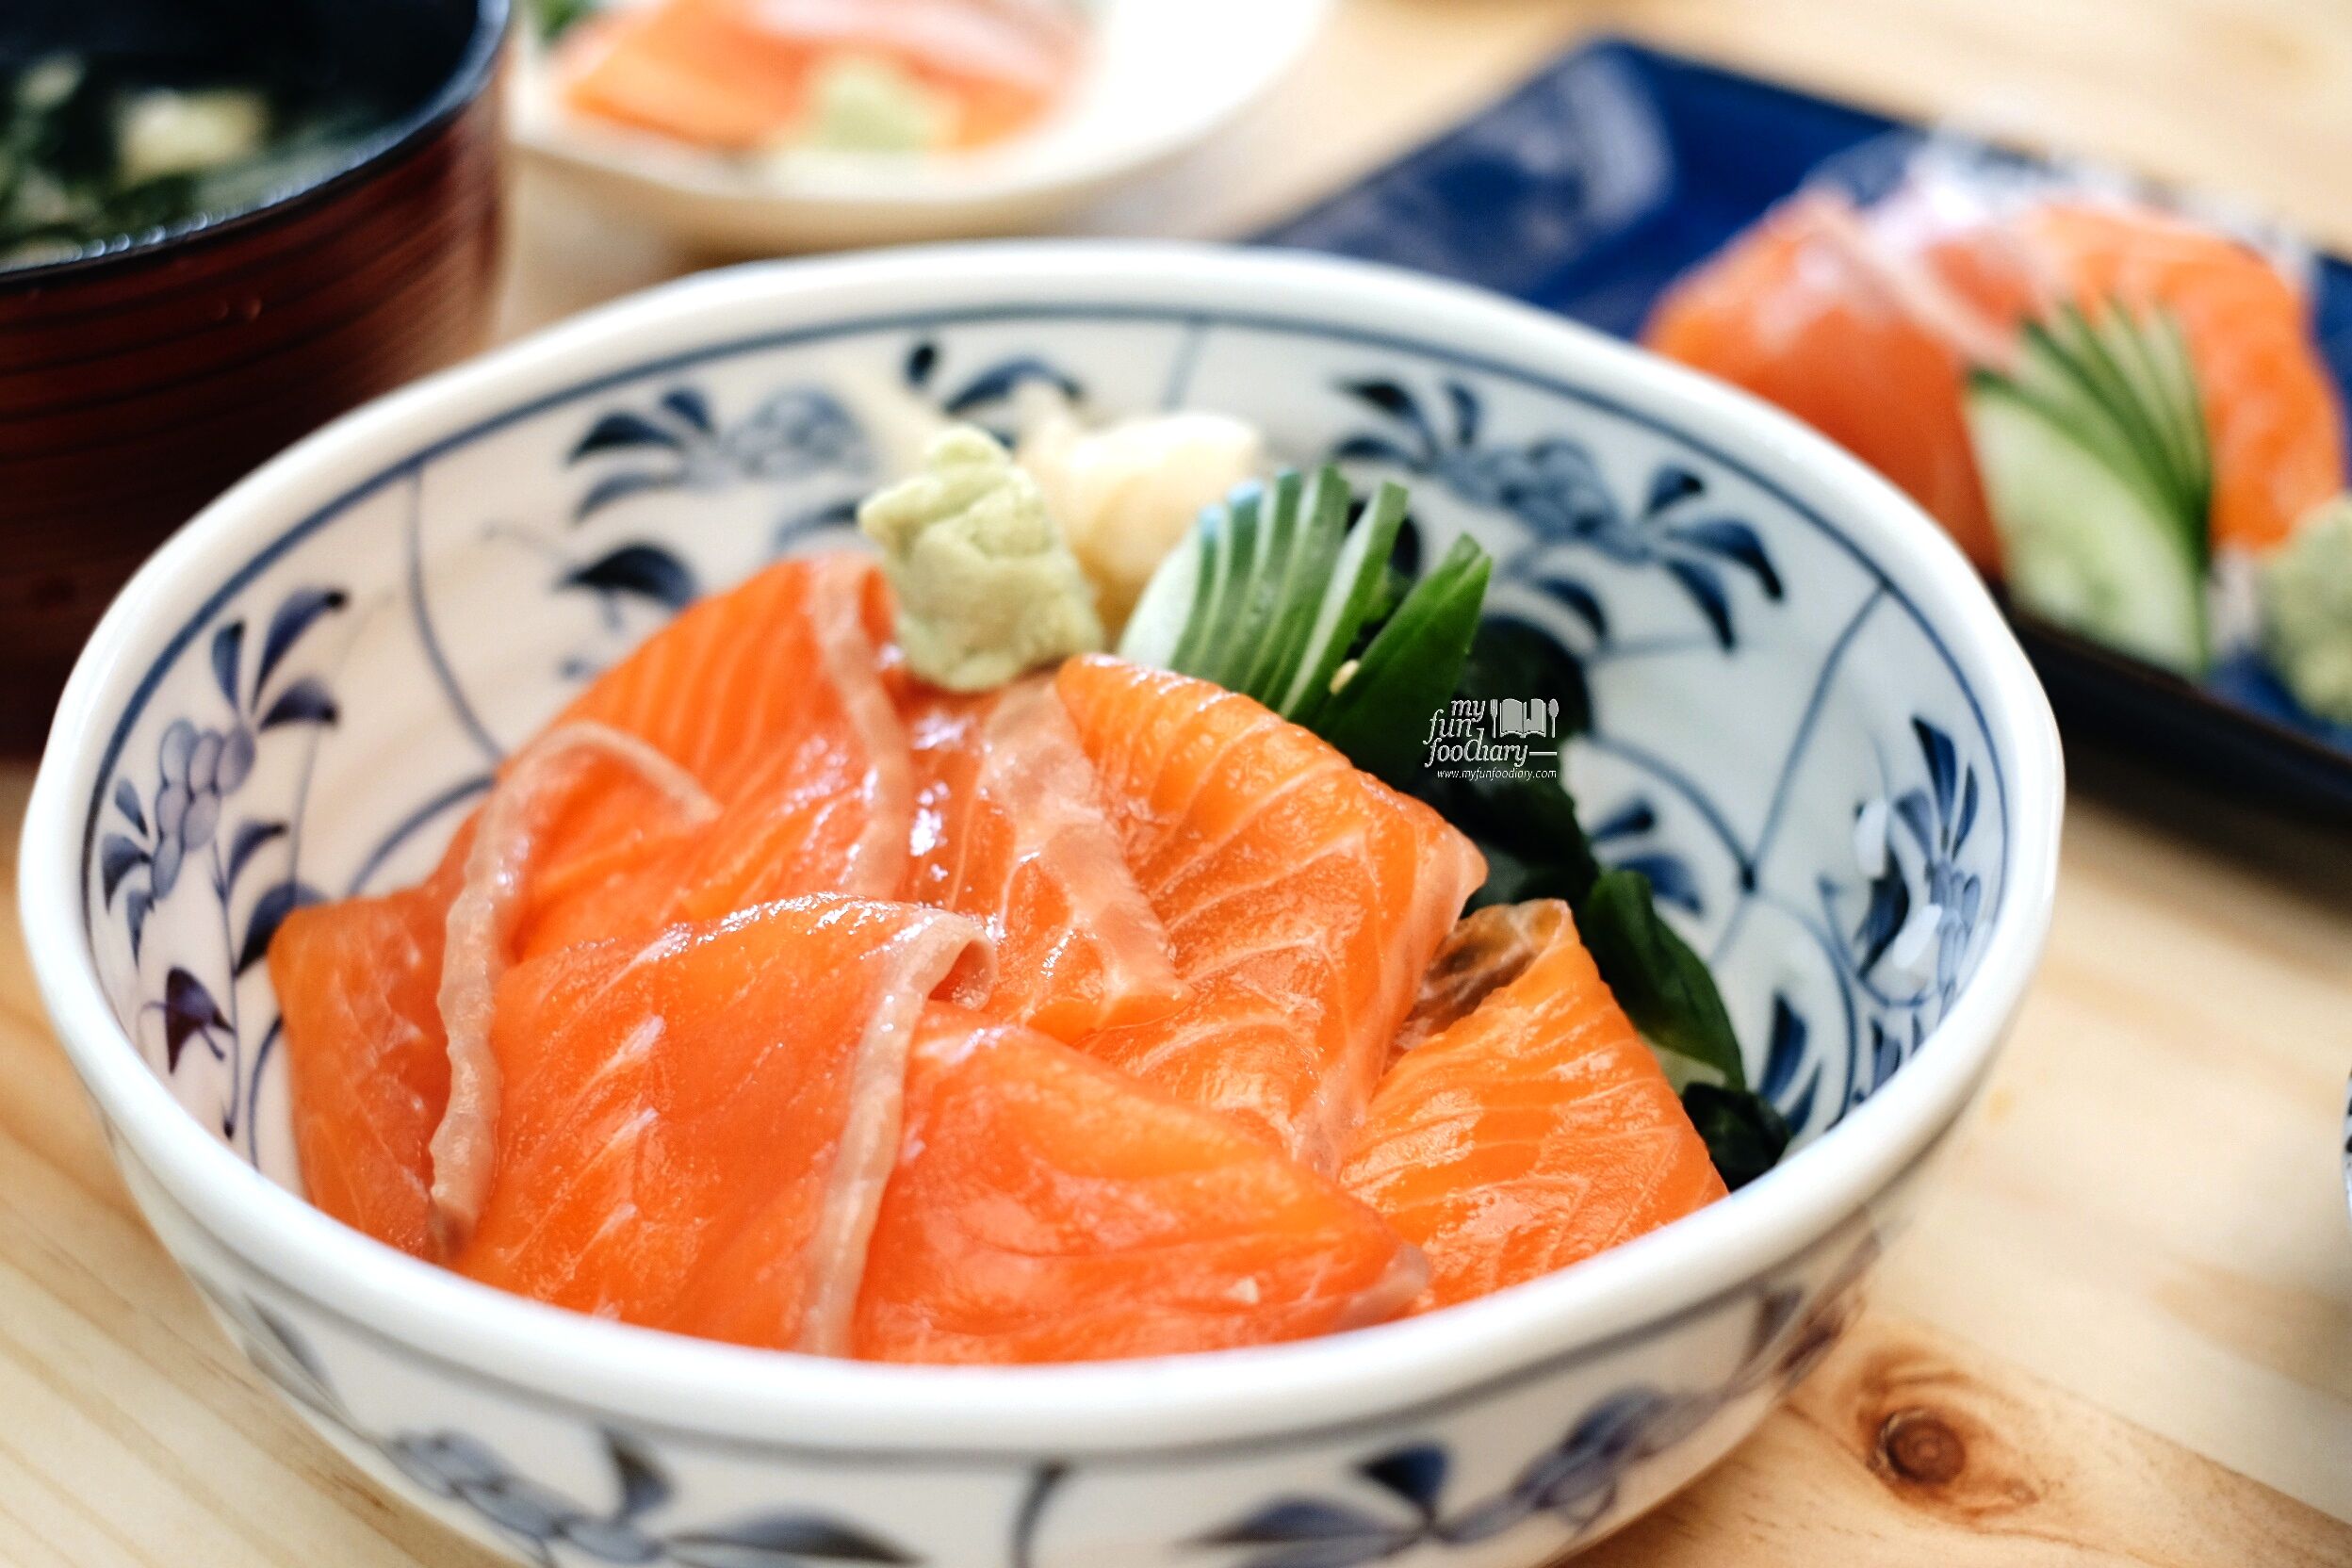 Salmon Donburi Set at Nama Sushi by Myfunfoodiary 01edit